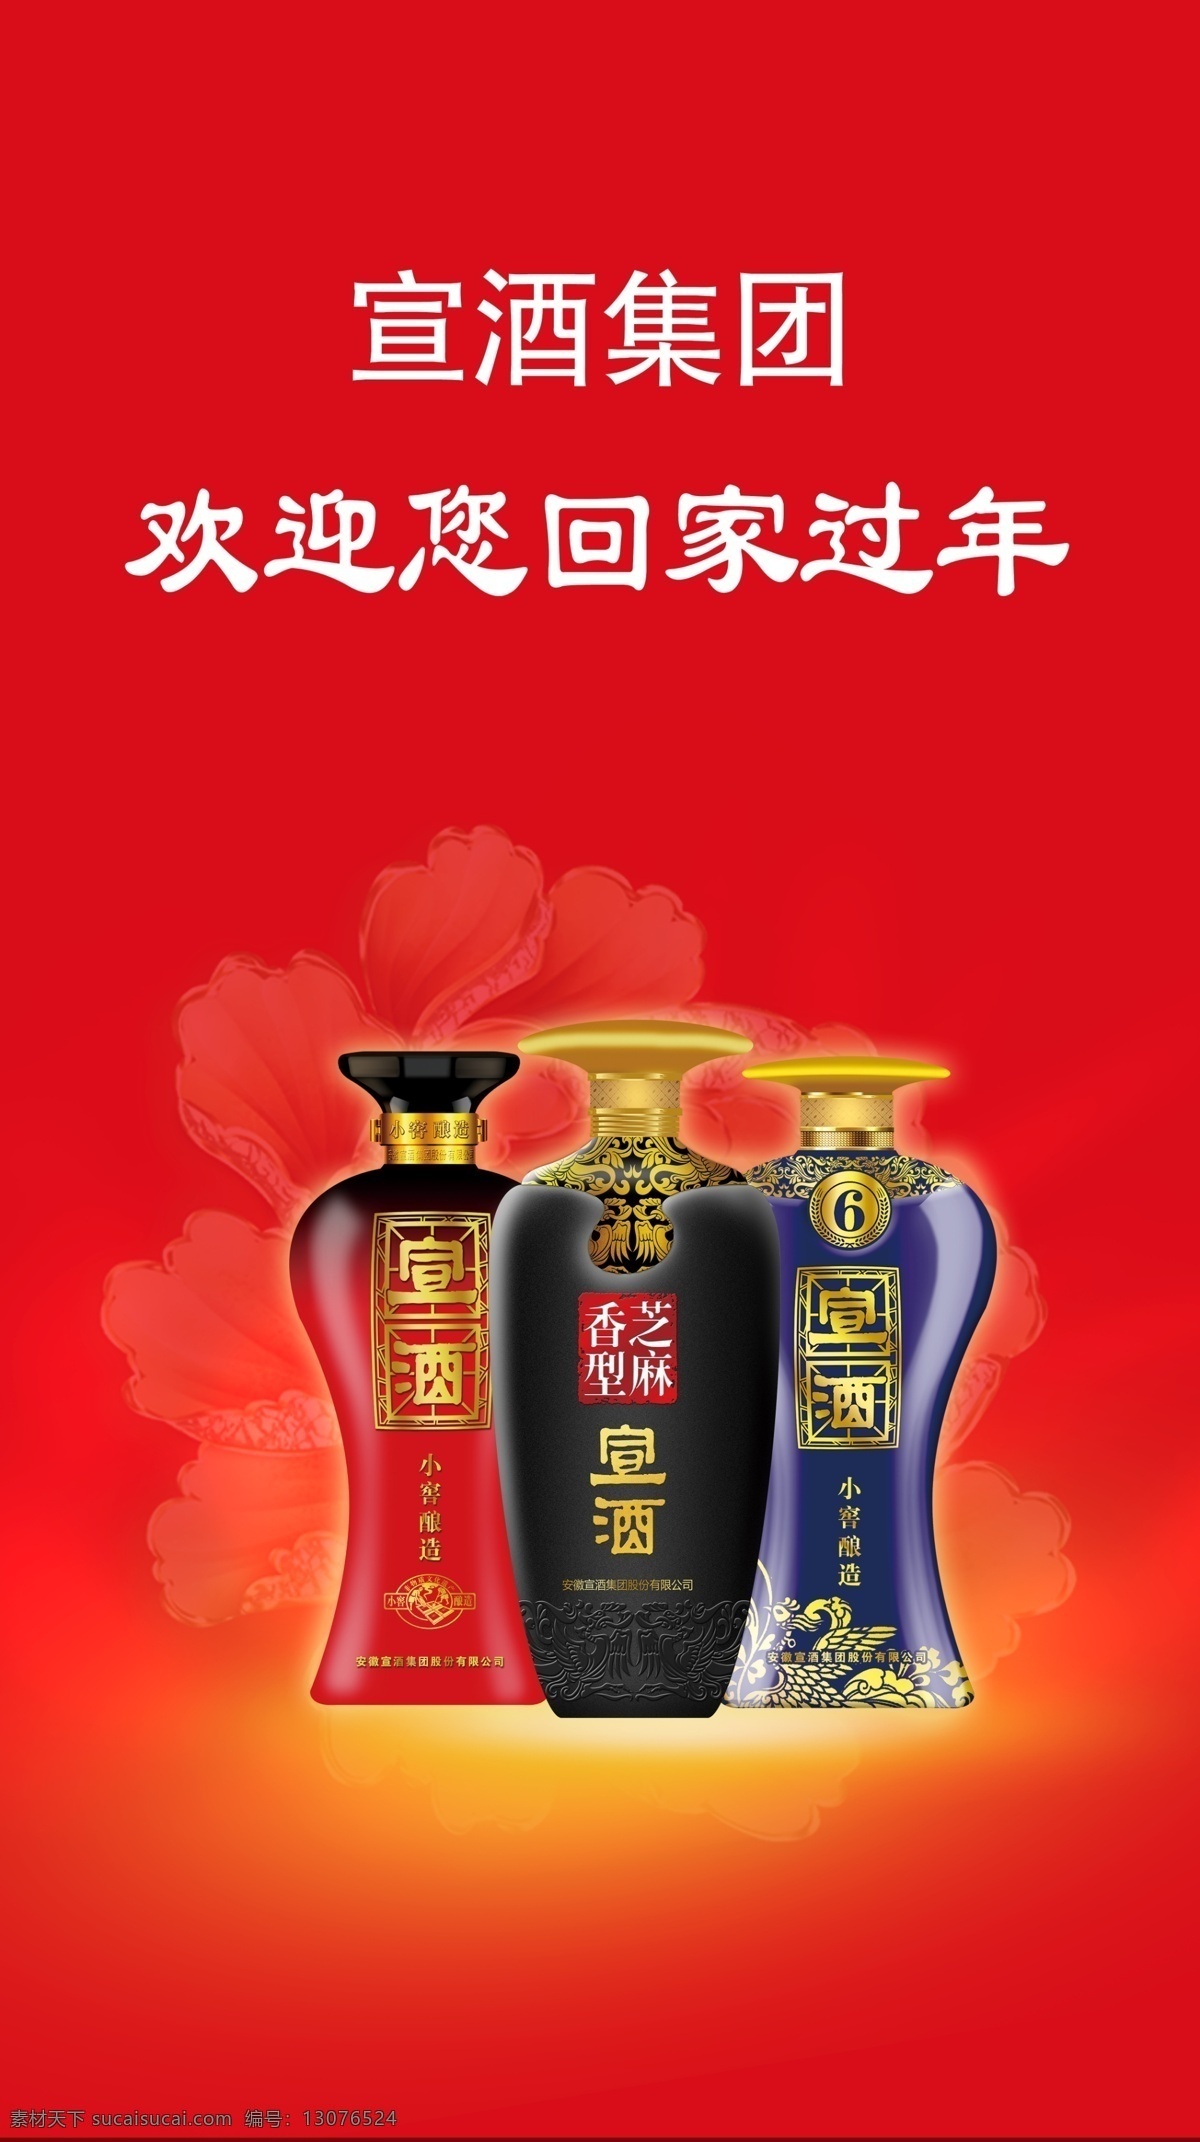 宣酒广告 酒 广告 红色背景 酒瓶子 牡丹素材 春节